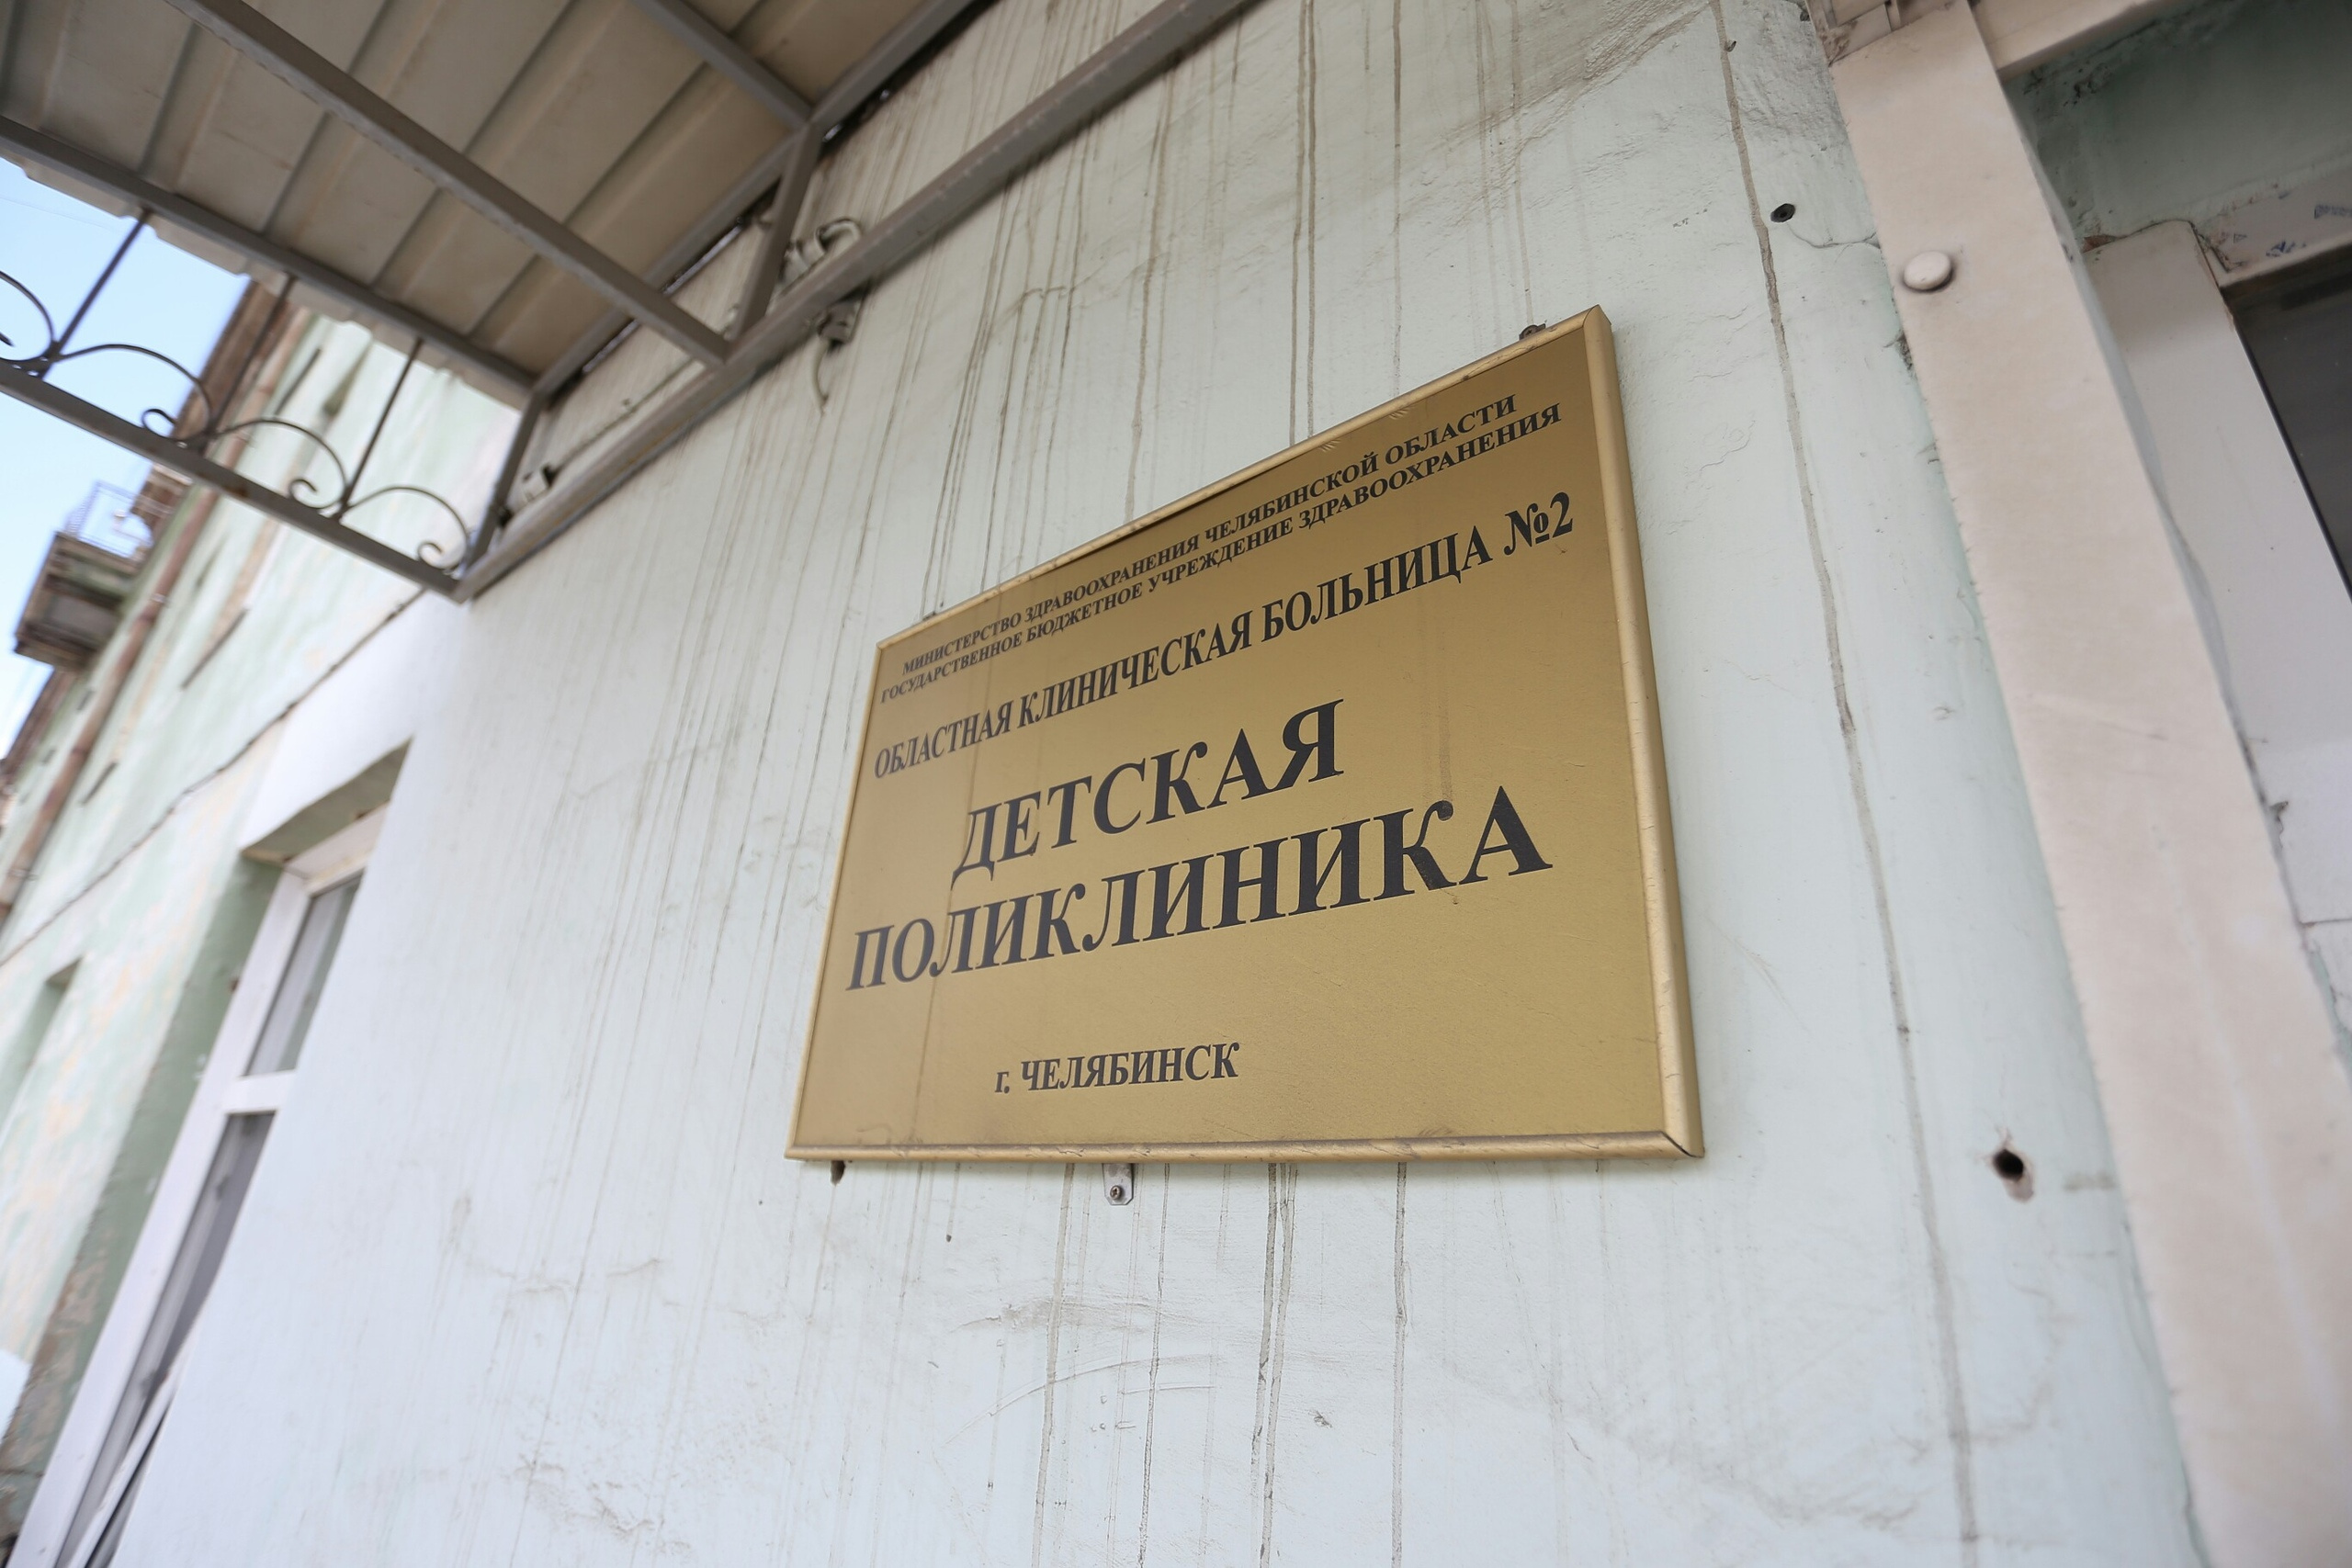 Address 58. Детская поликлиника Челябинск.